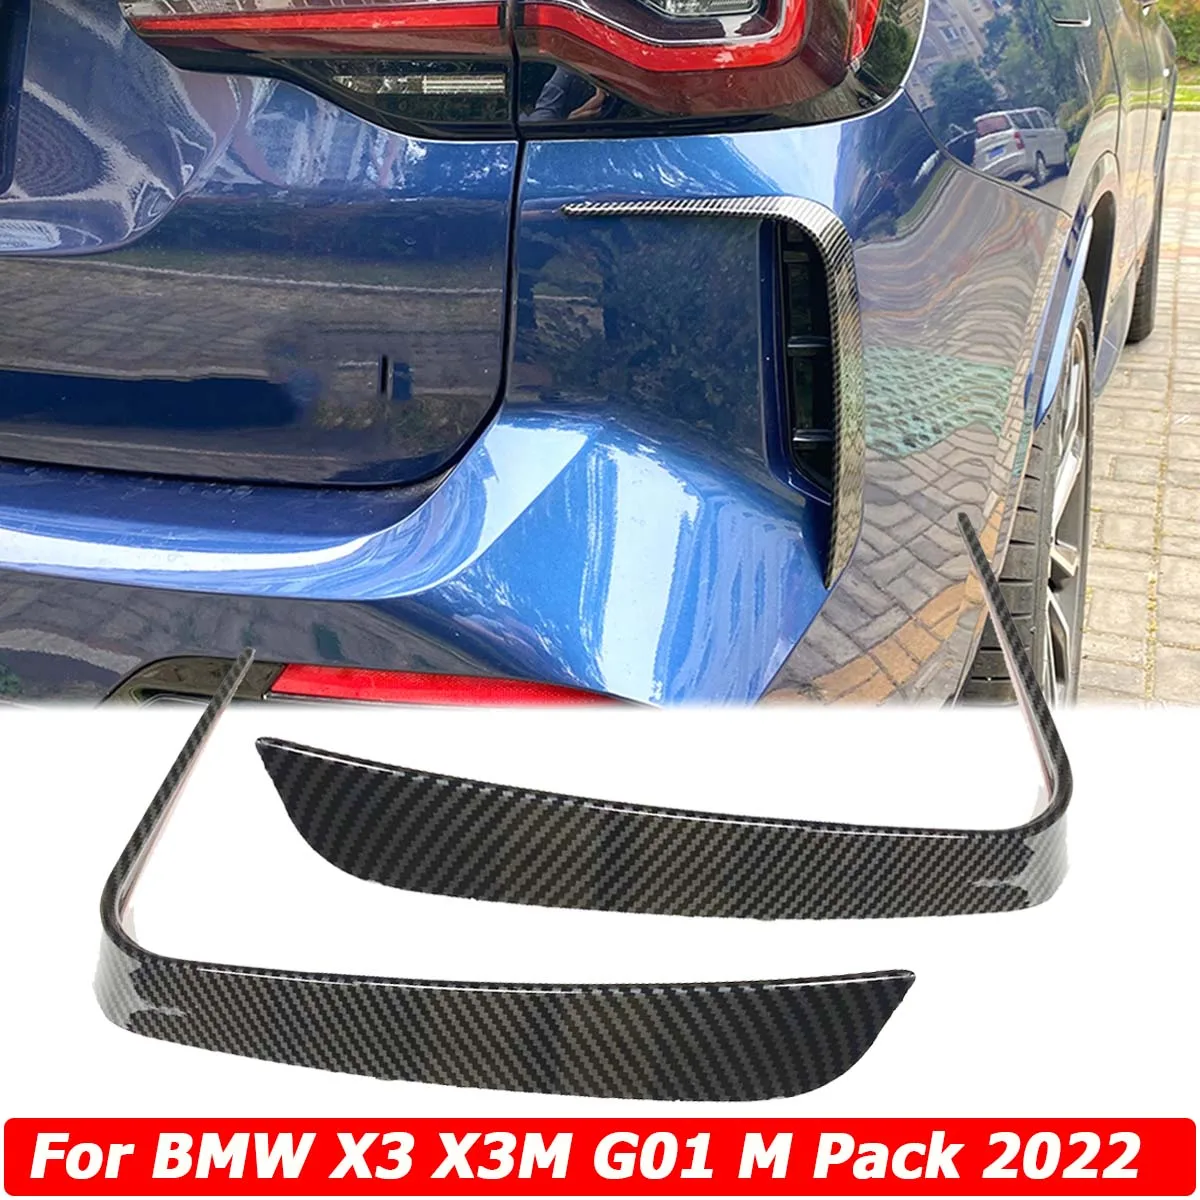 אחורי פגוש ספליטר עבור BMW X3 X3M G01 M חבילה 2022 צד ספוילר Trim אוויר Vent צריכת אתחול ערכת גוף canard אביזרי רכב